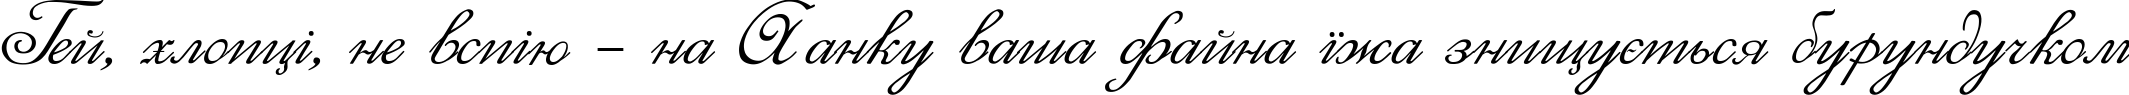 Пример написания шрифтом Elzevir текста на украинском